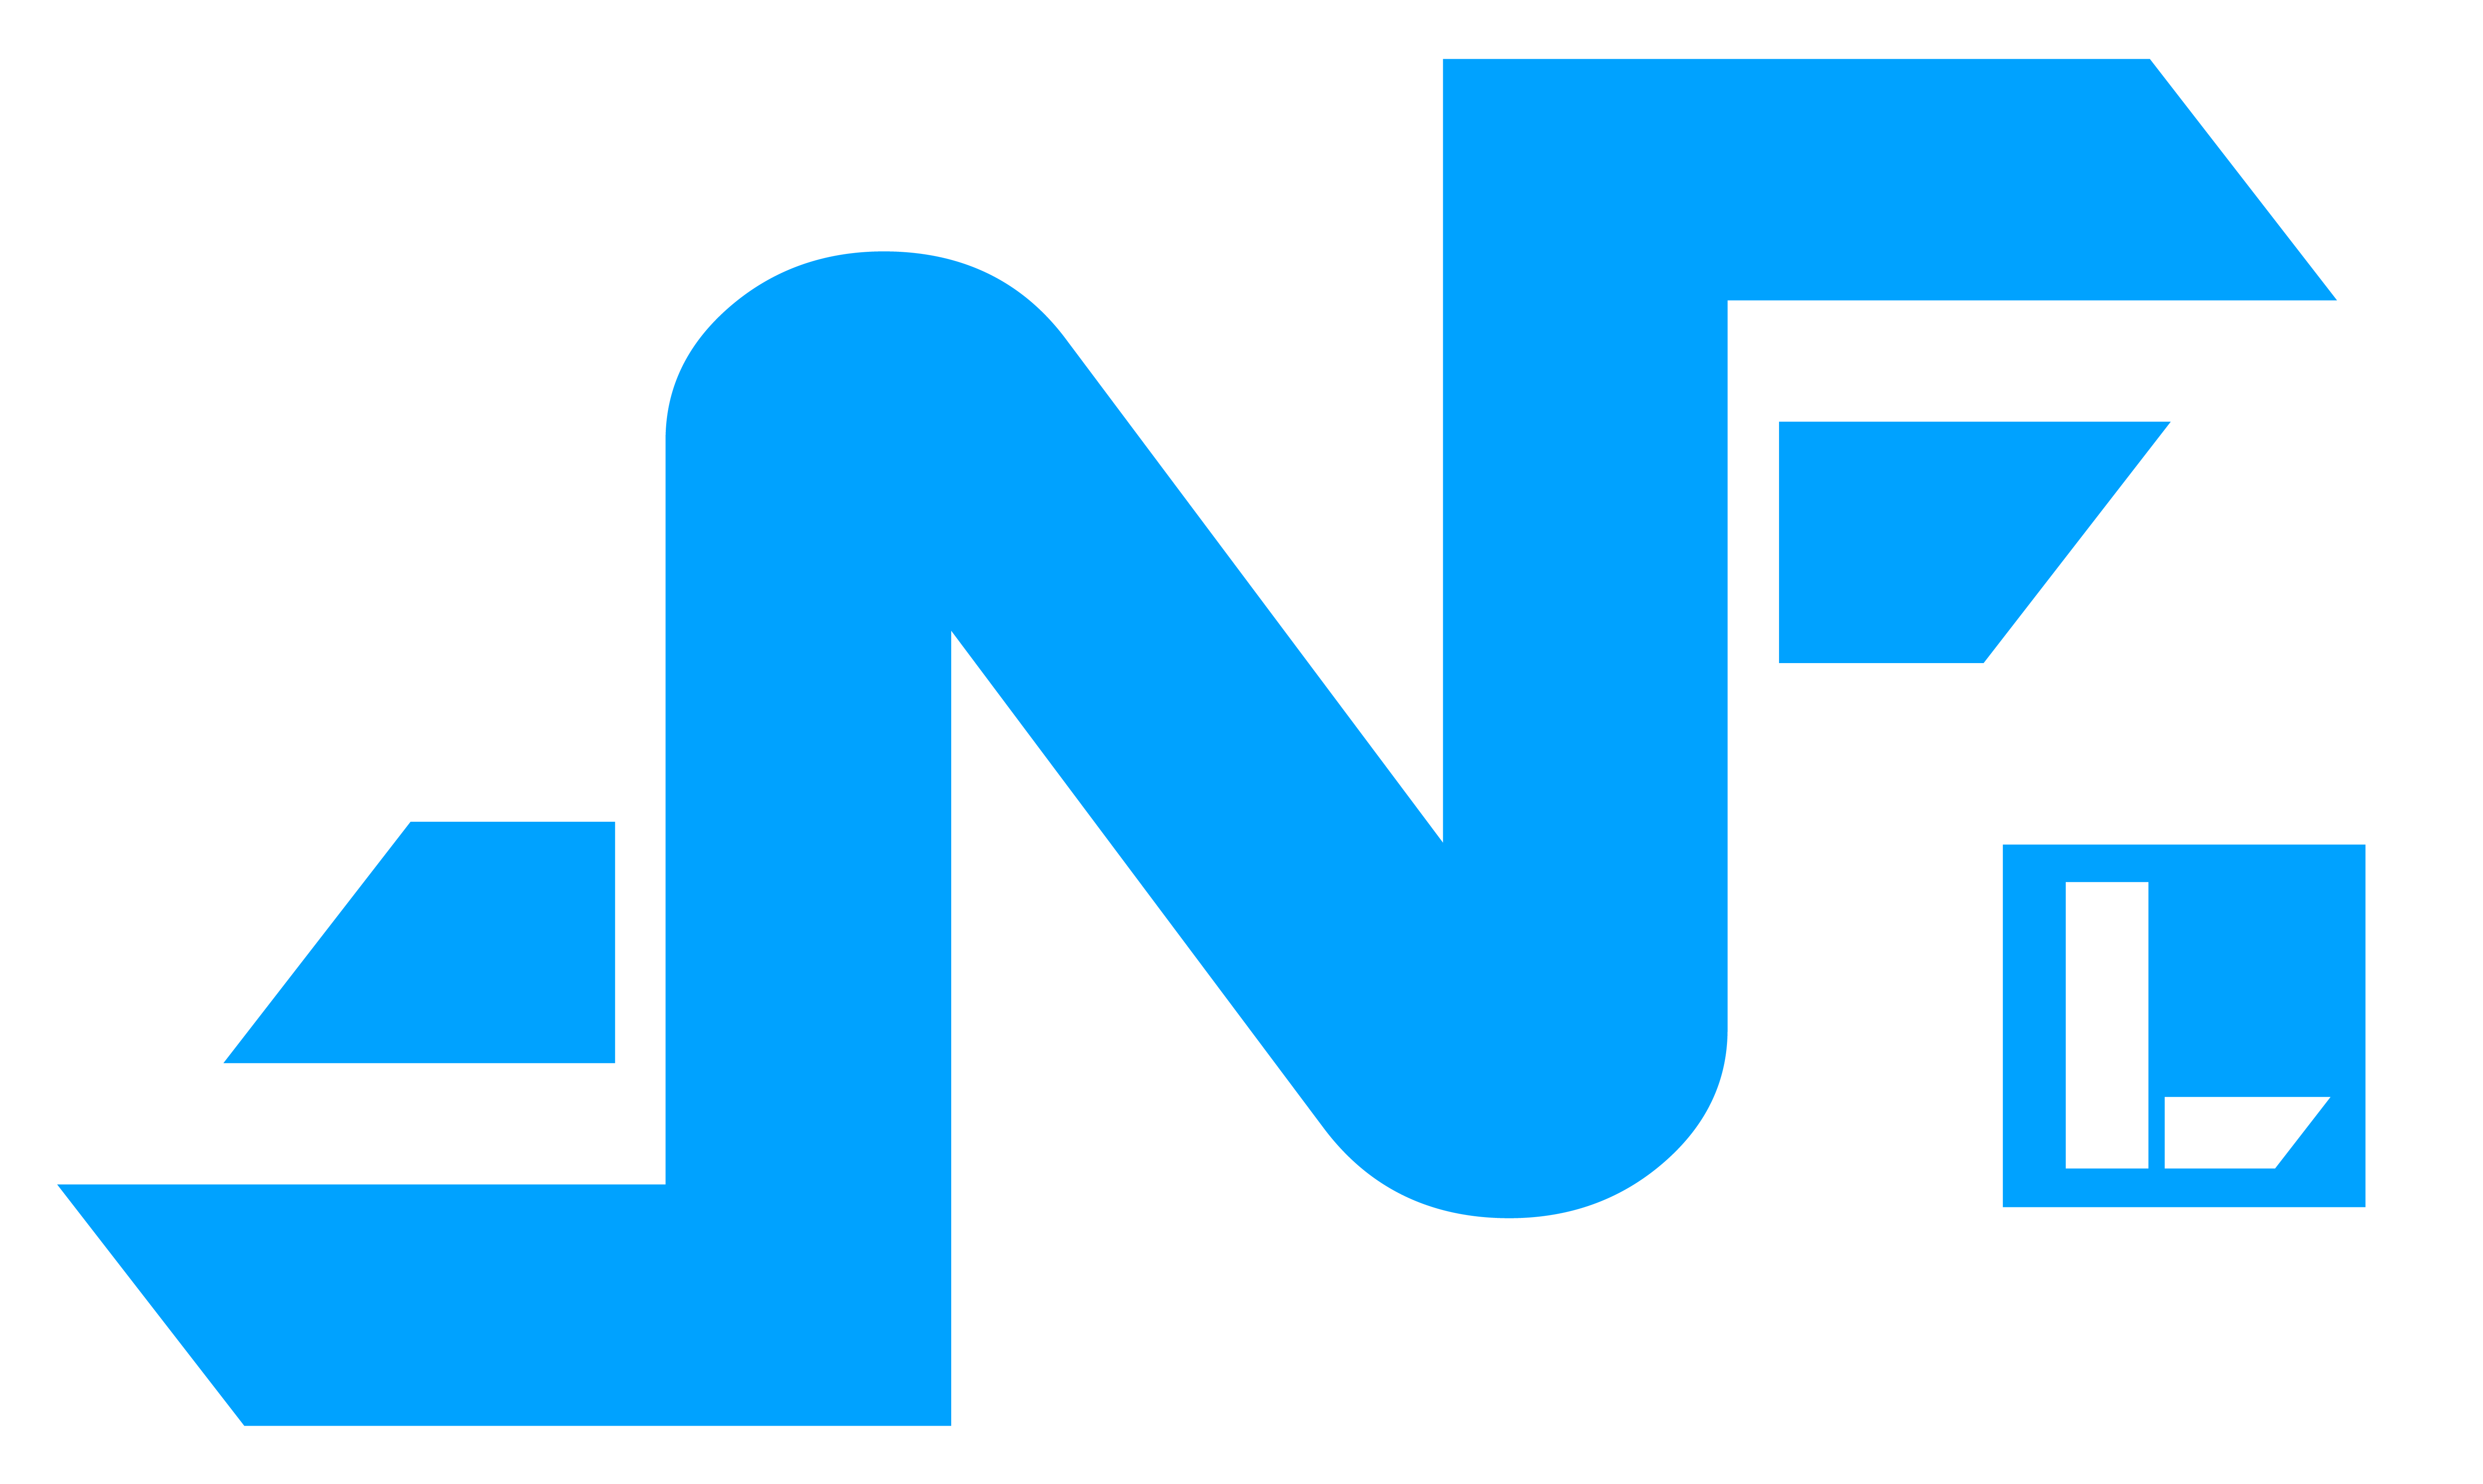 Fahrschule Nathan Friedli